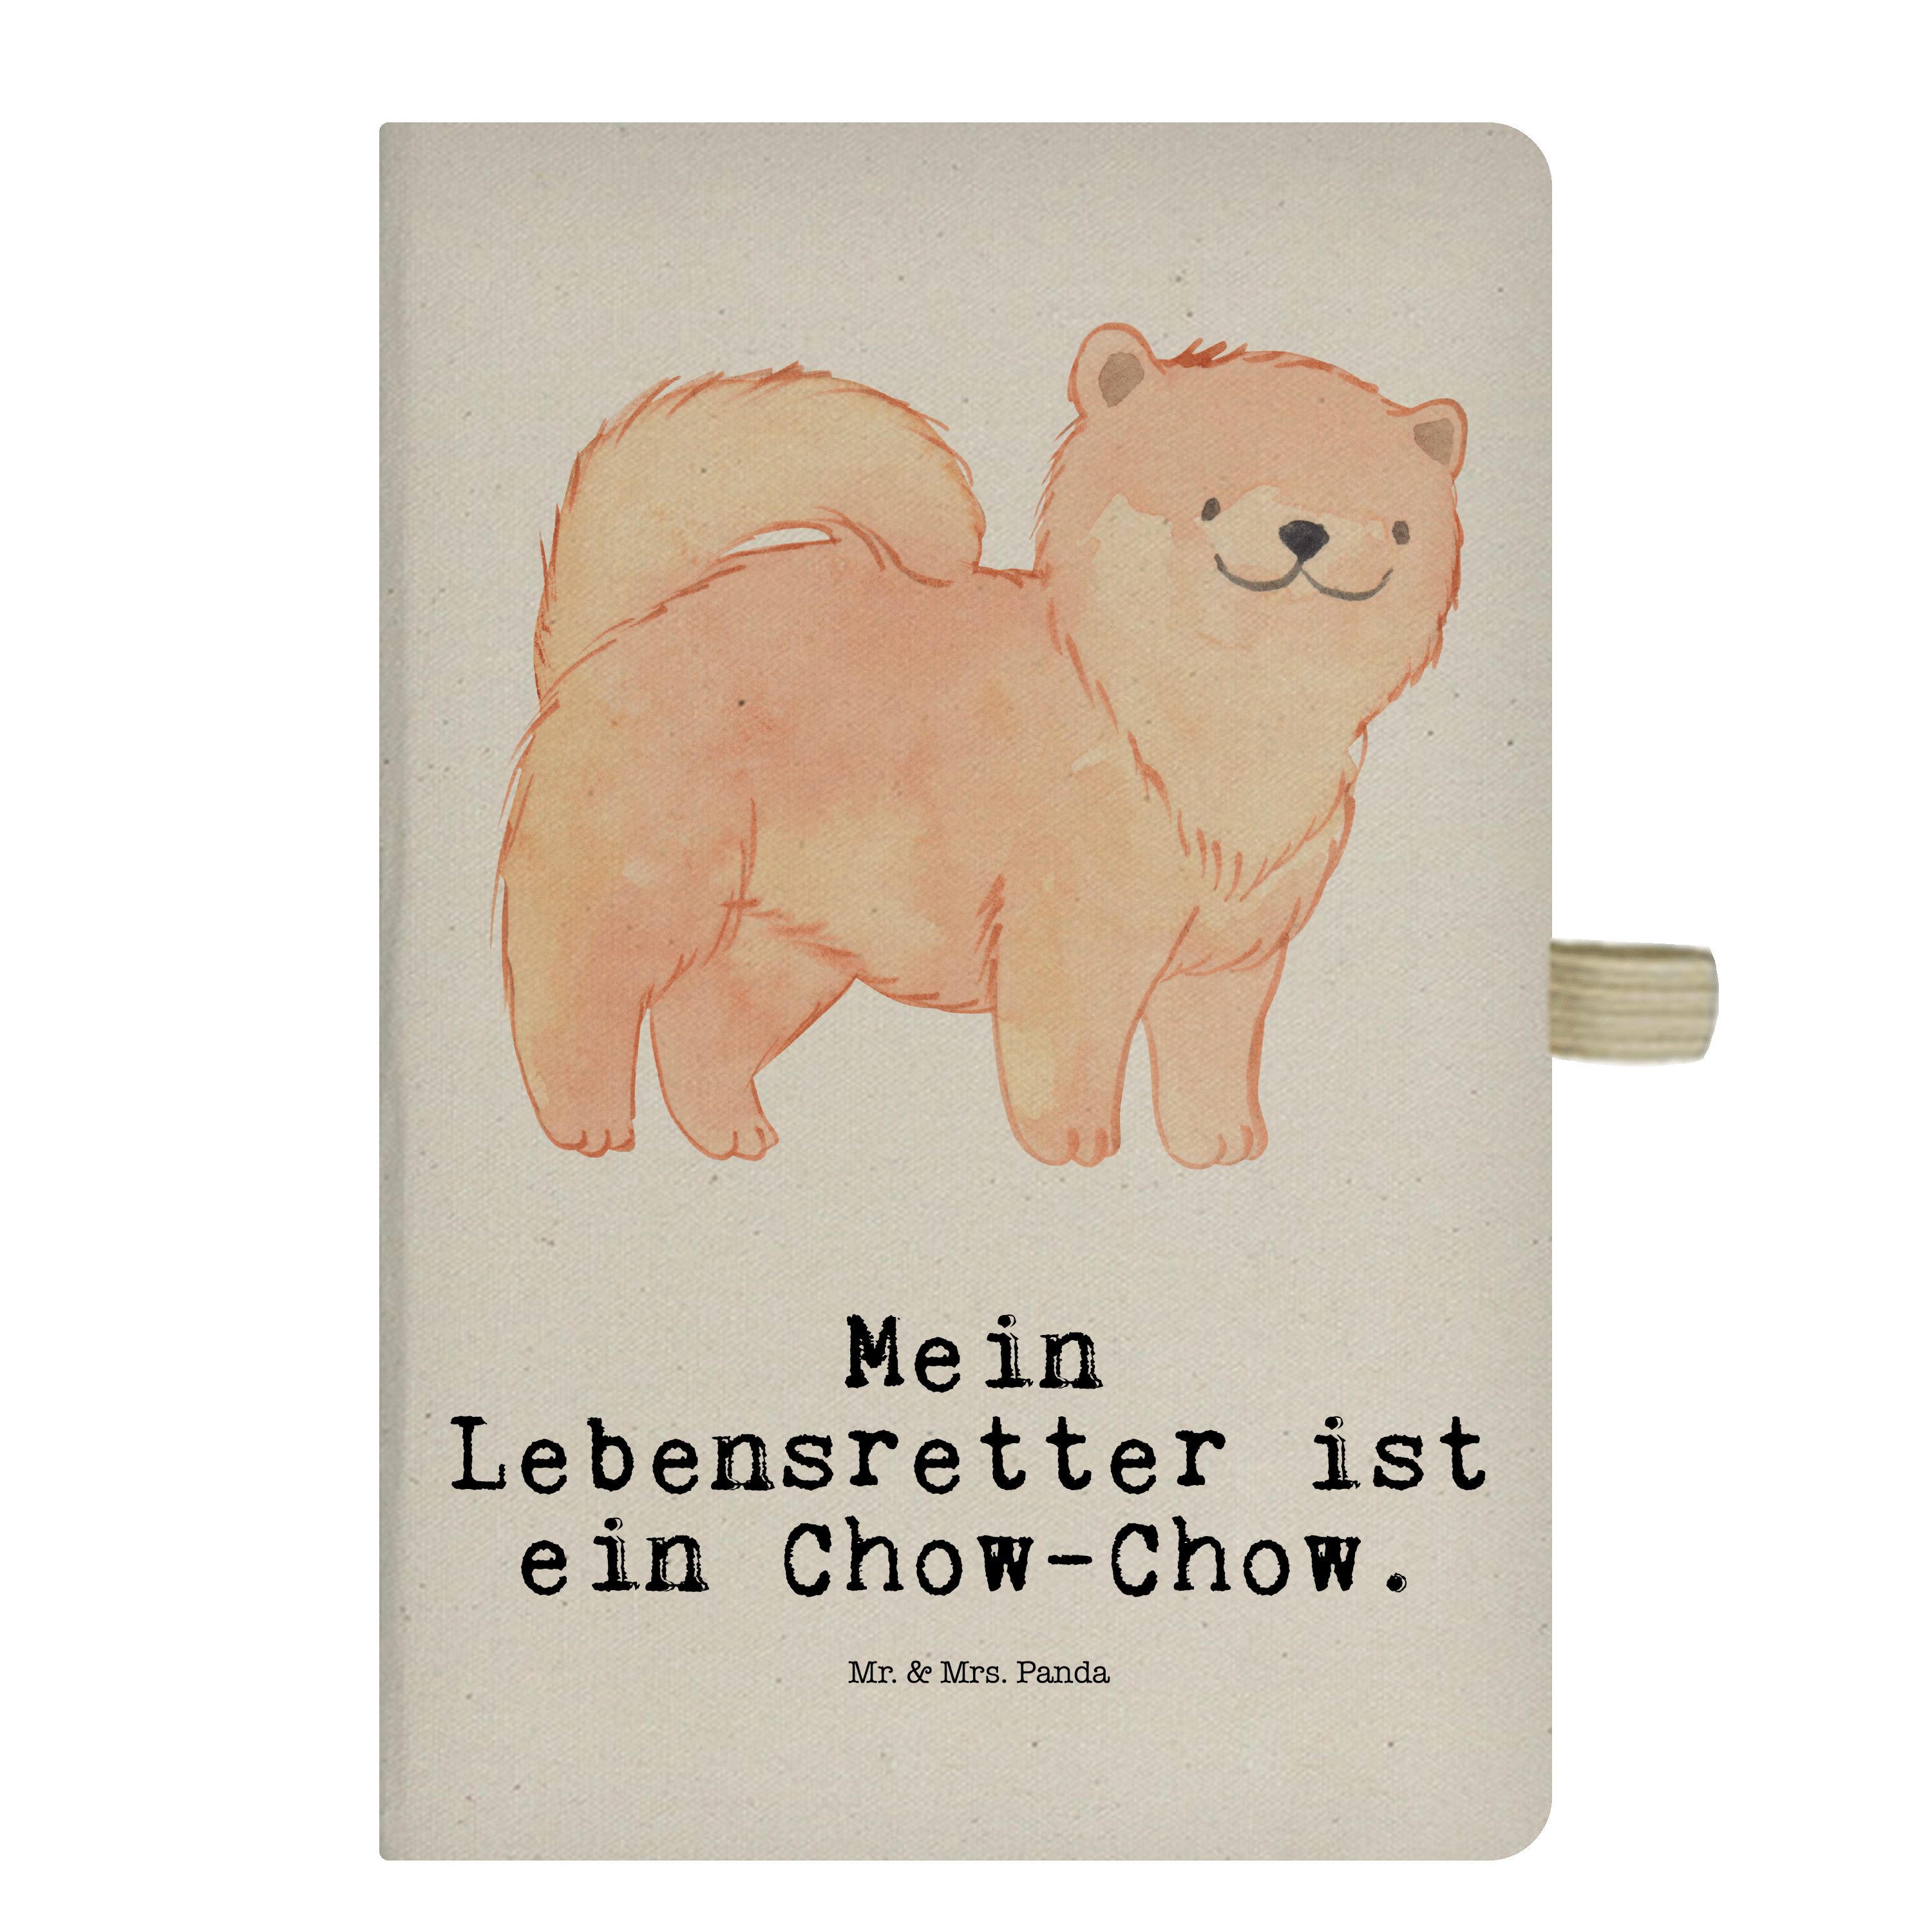 Mr. & Mrs. Panda Notizbuch Chow-Chow Lebensretter - Transparent - Geschenk, Skizzenbuch, Welpe, Mr. & Mrs. Panda